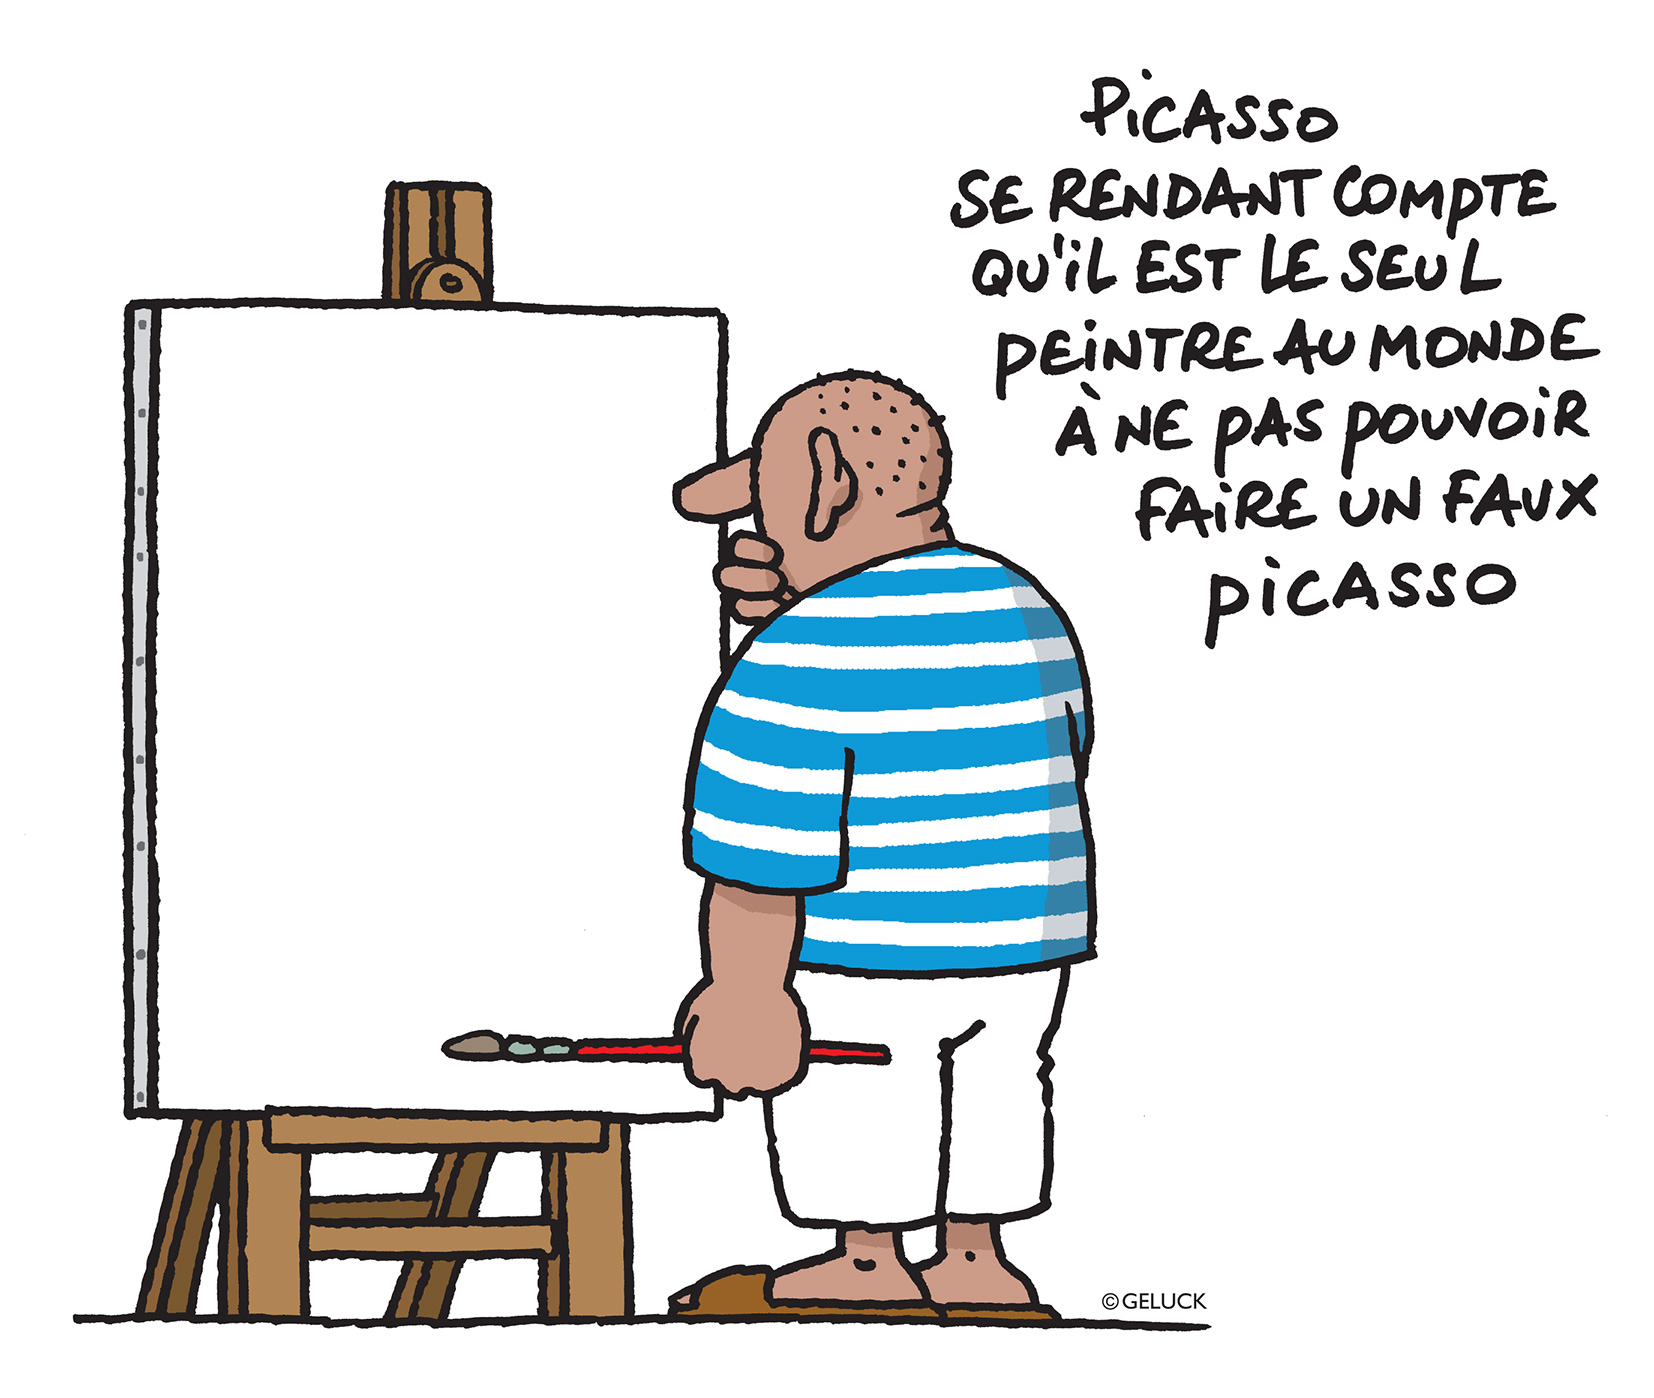 Philippe Geluck - Picasso se rendant compte qu’il est le seul peintre au monde à ne pas pouvoir faire un faux Picasso